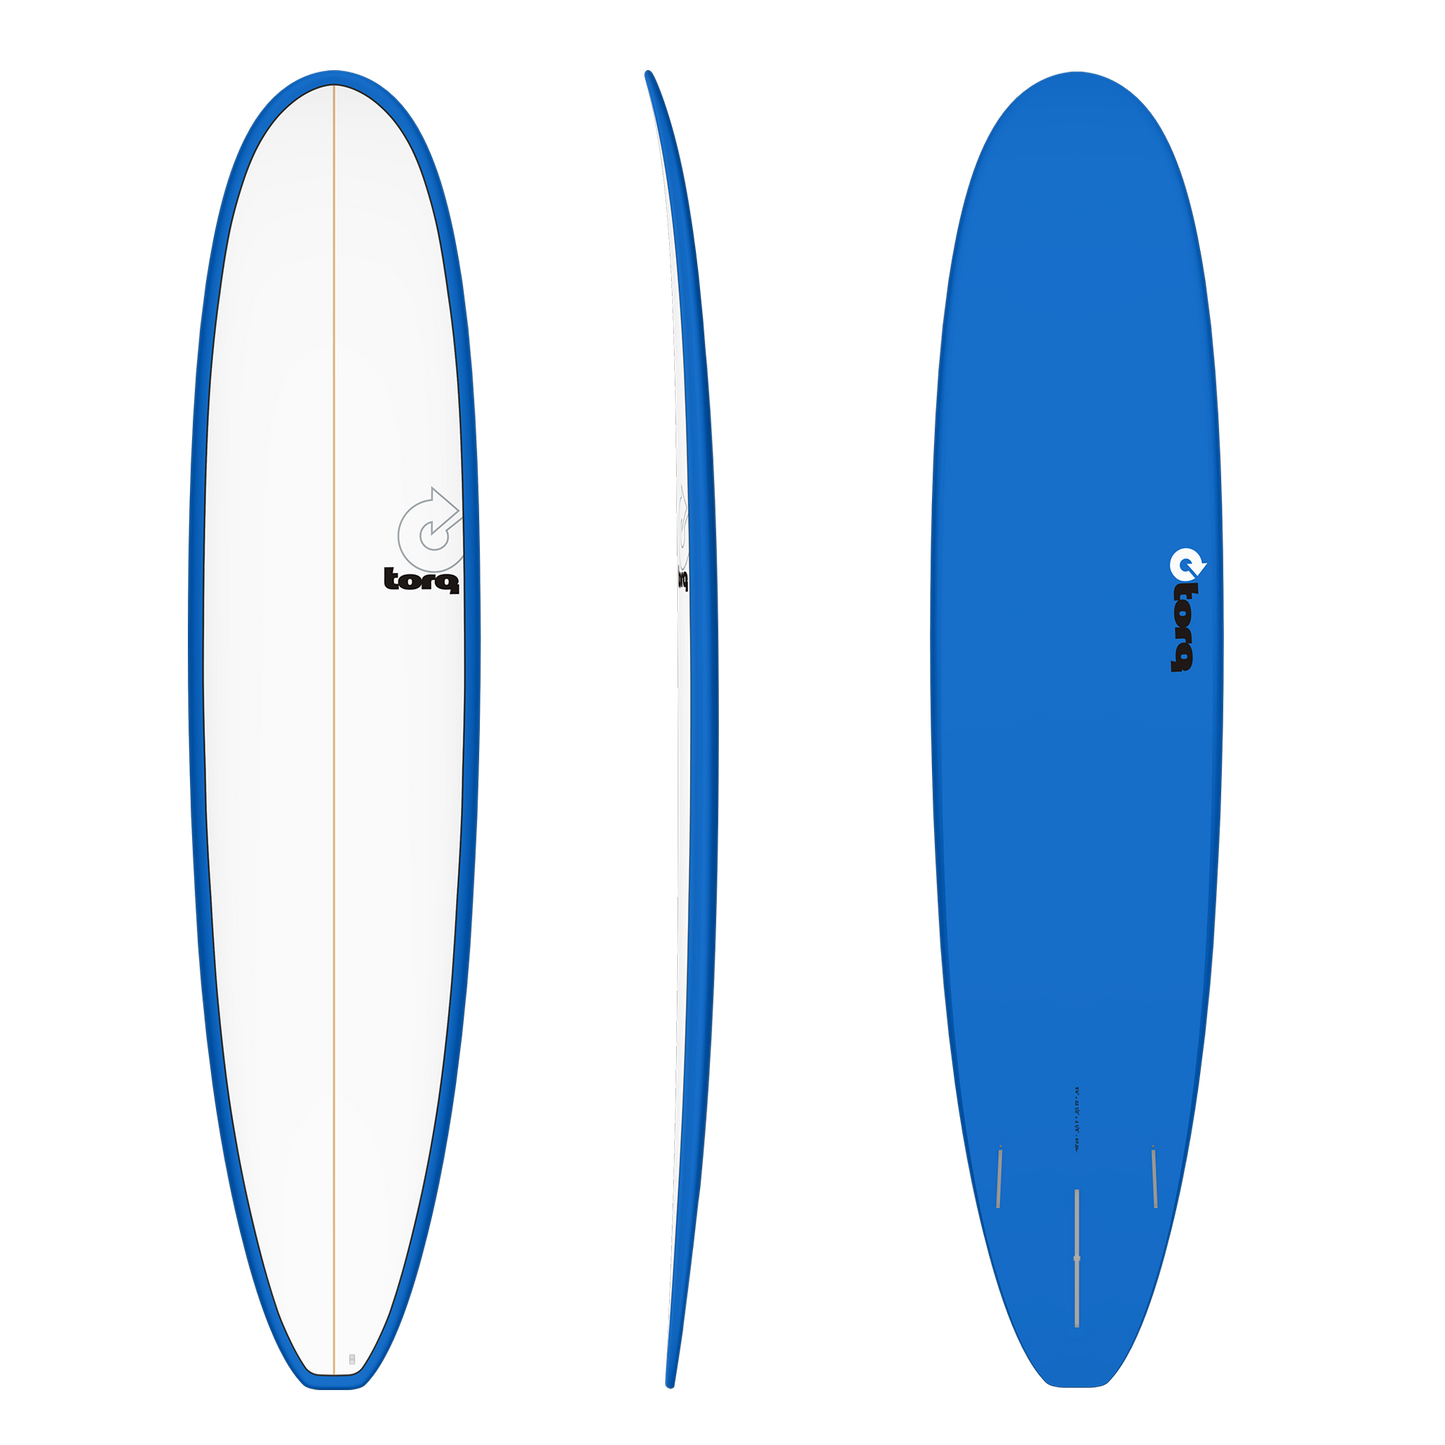 TORQ LONGBOARD SURFBOARD